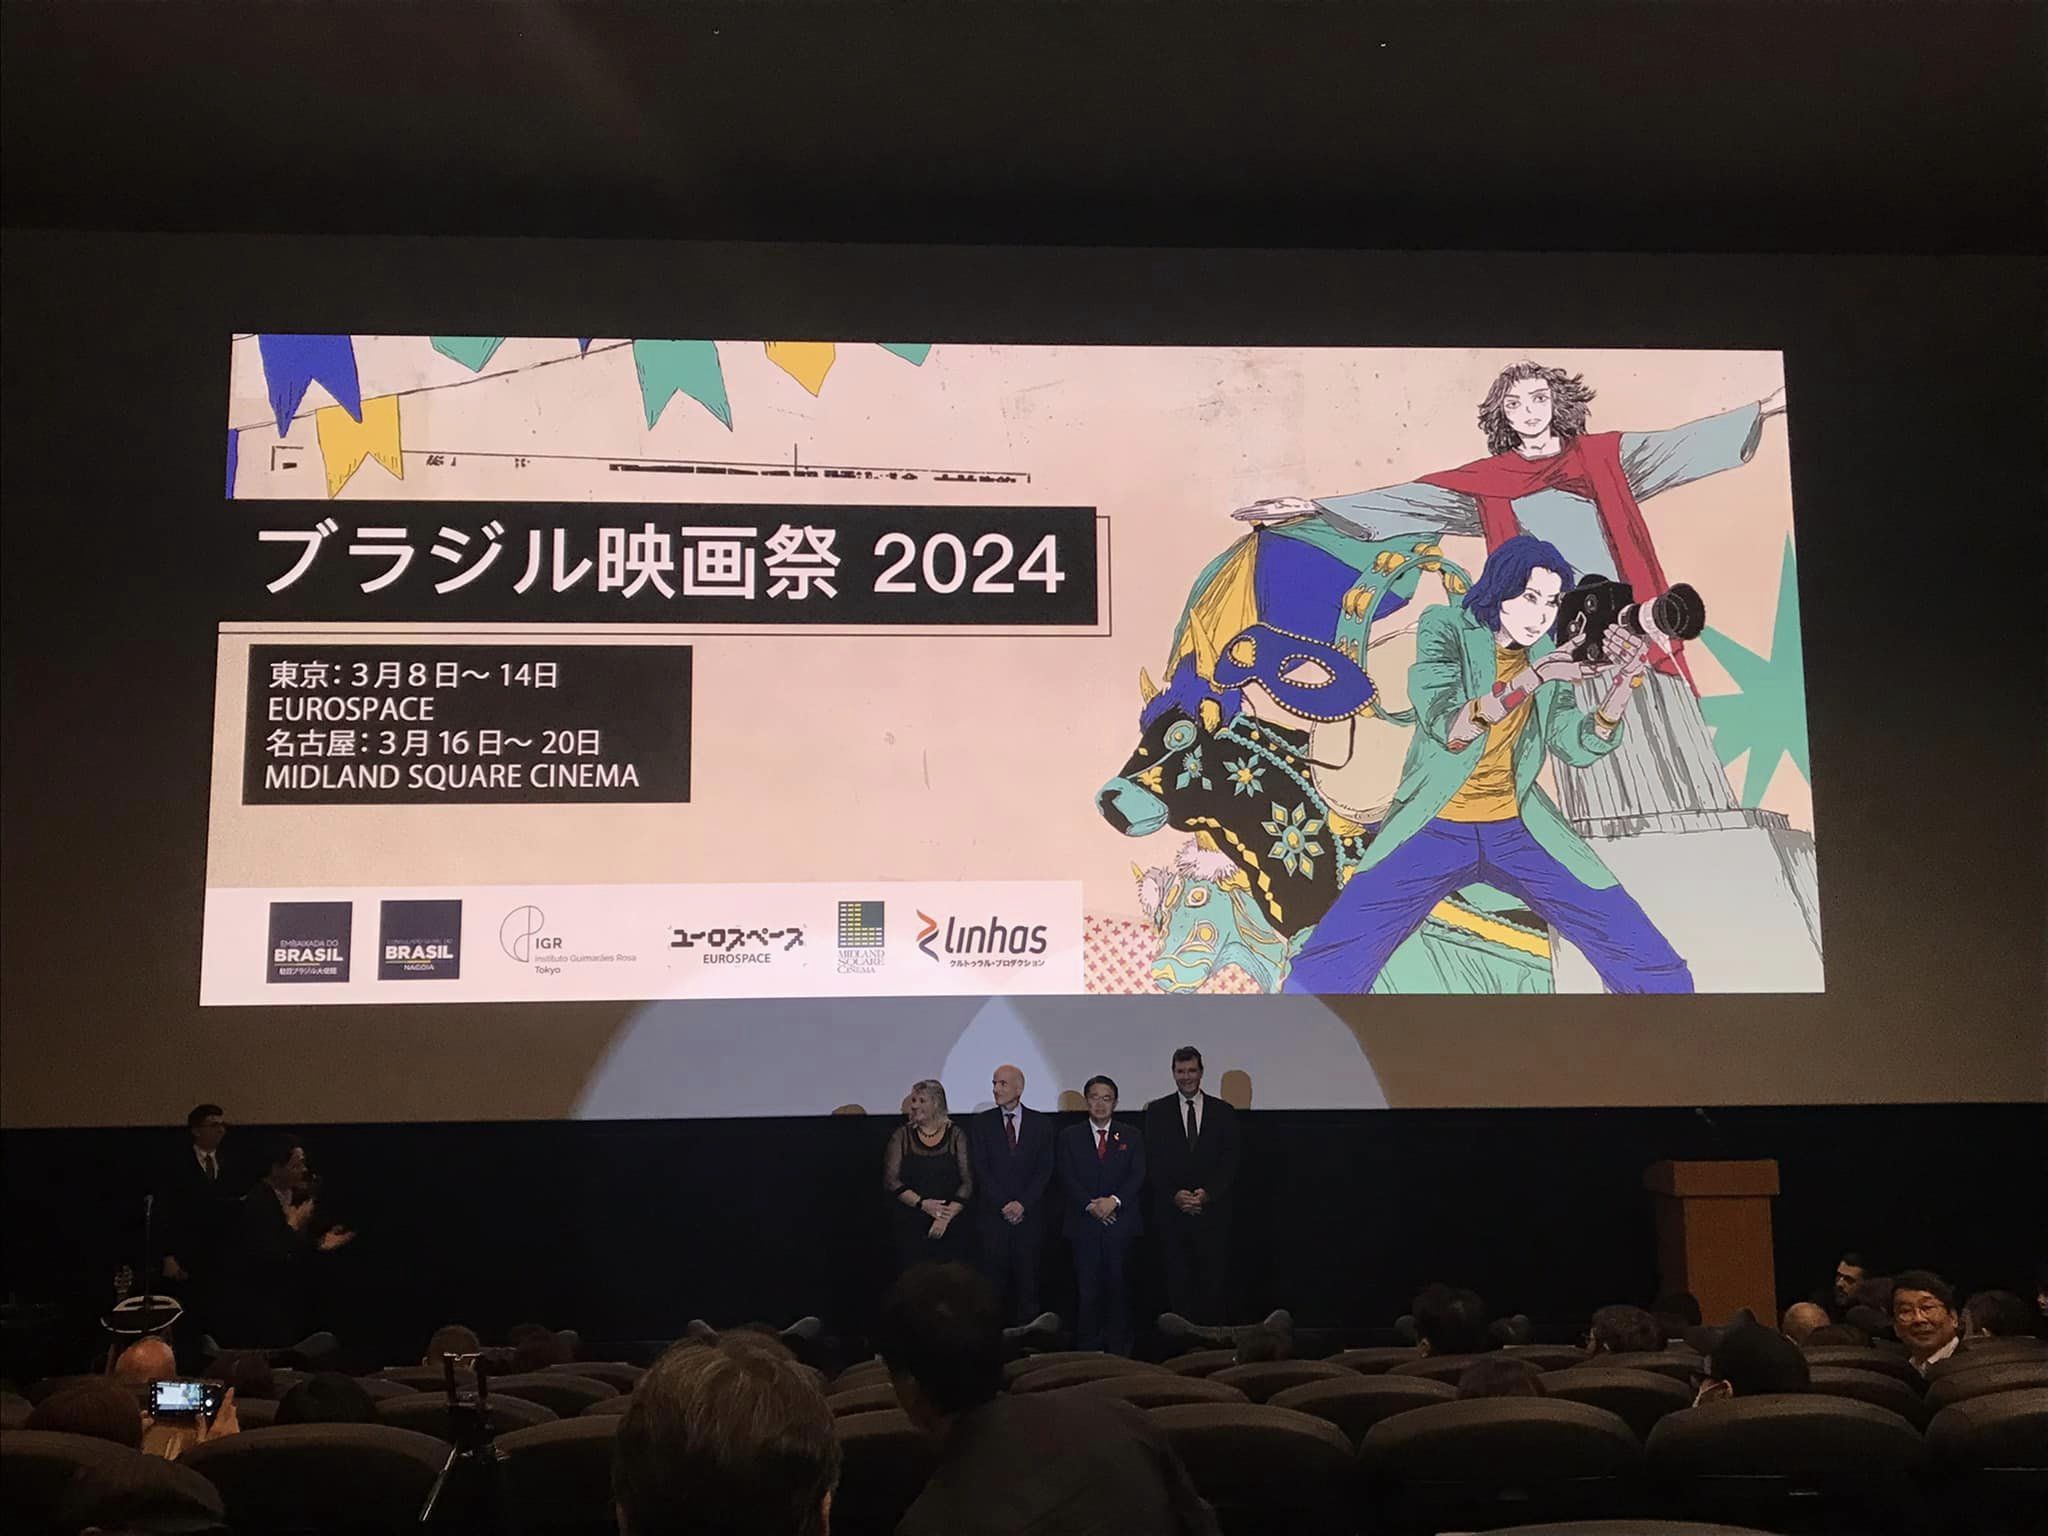 ブラジル映画祭2024 in 名古屋 [1日目レポート]